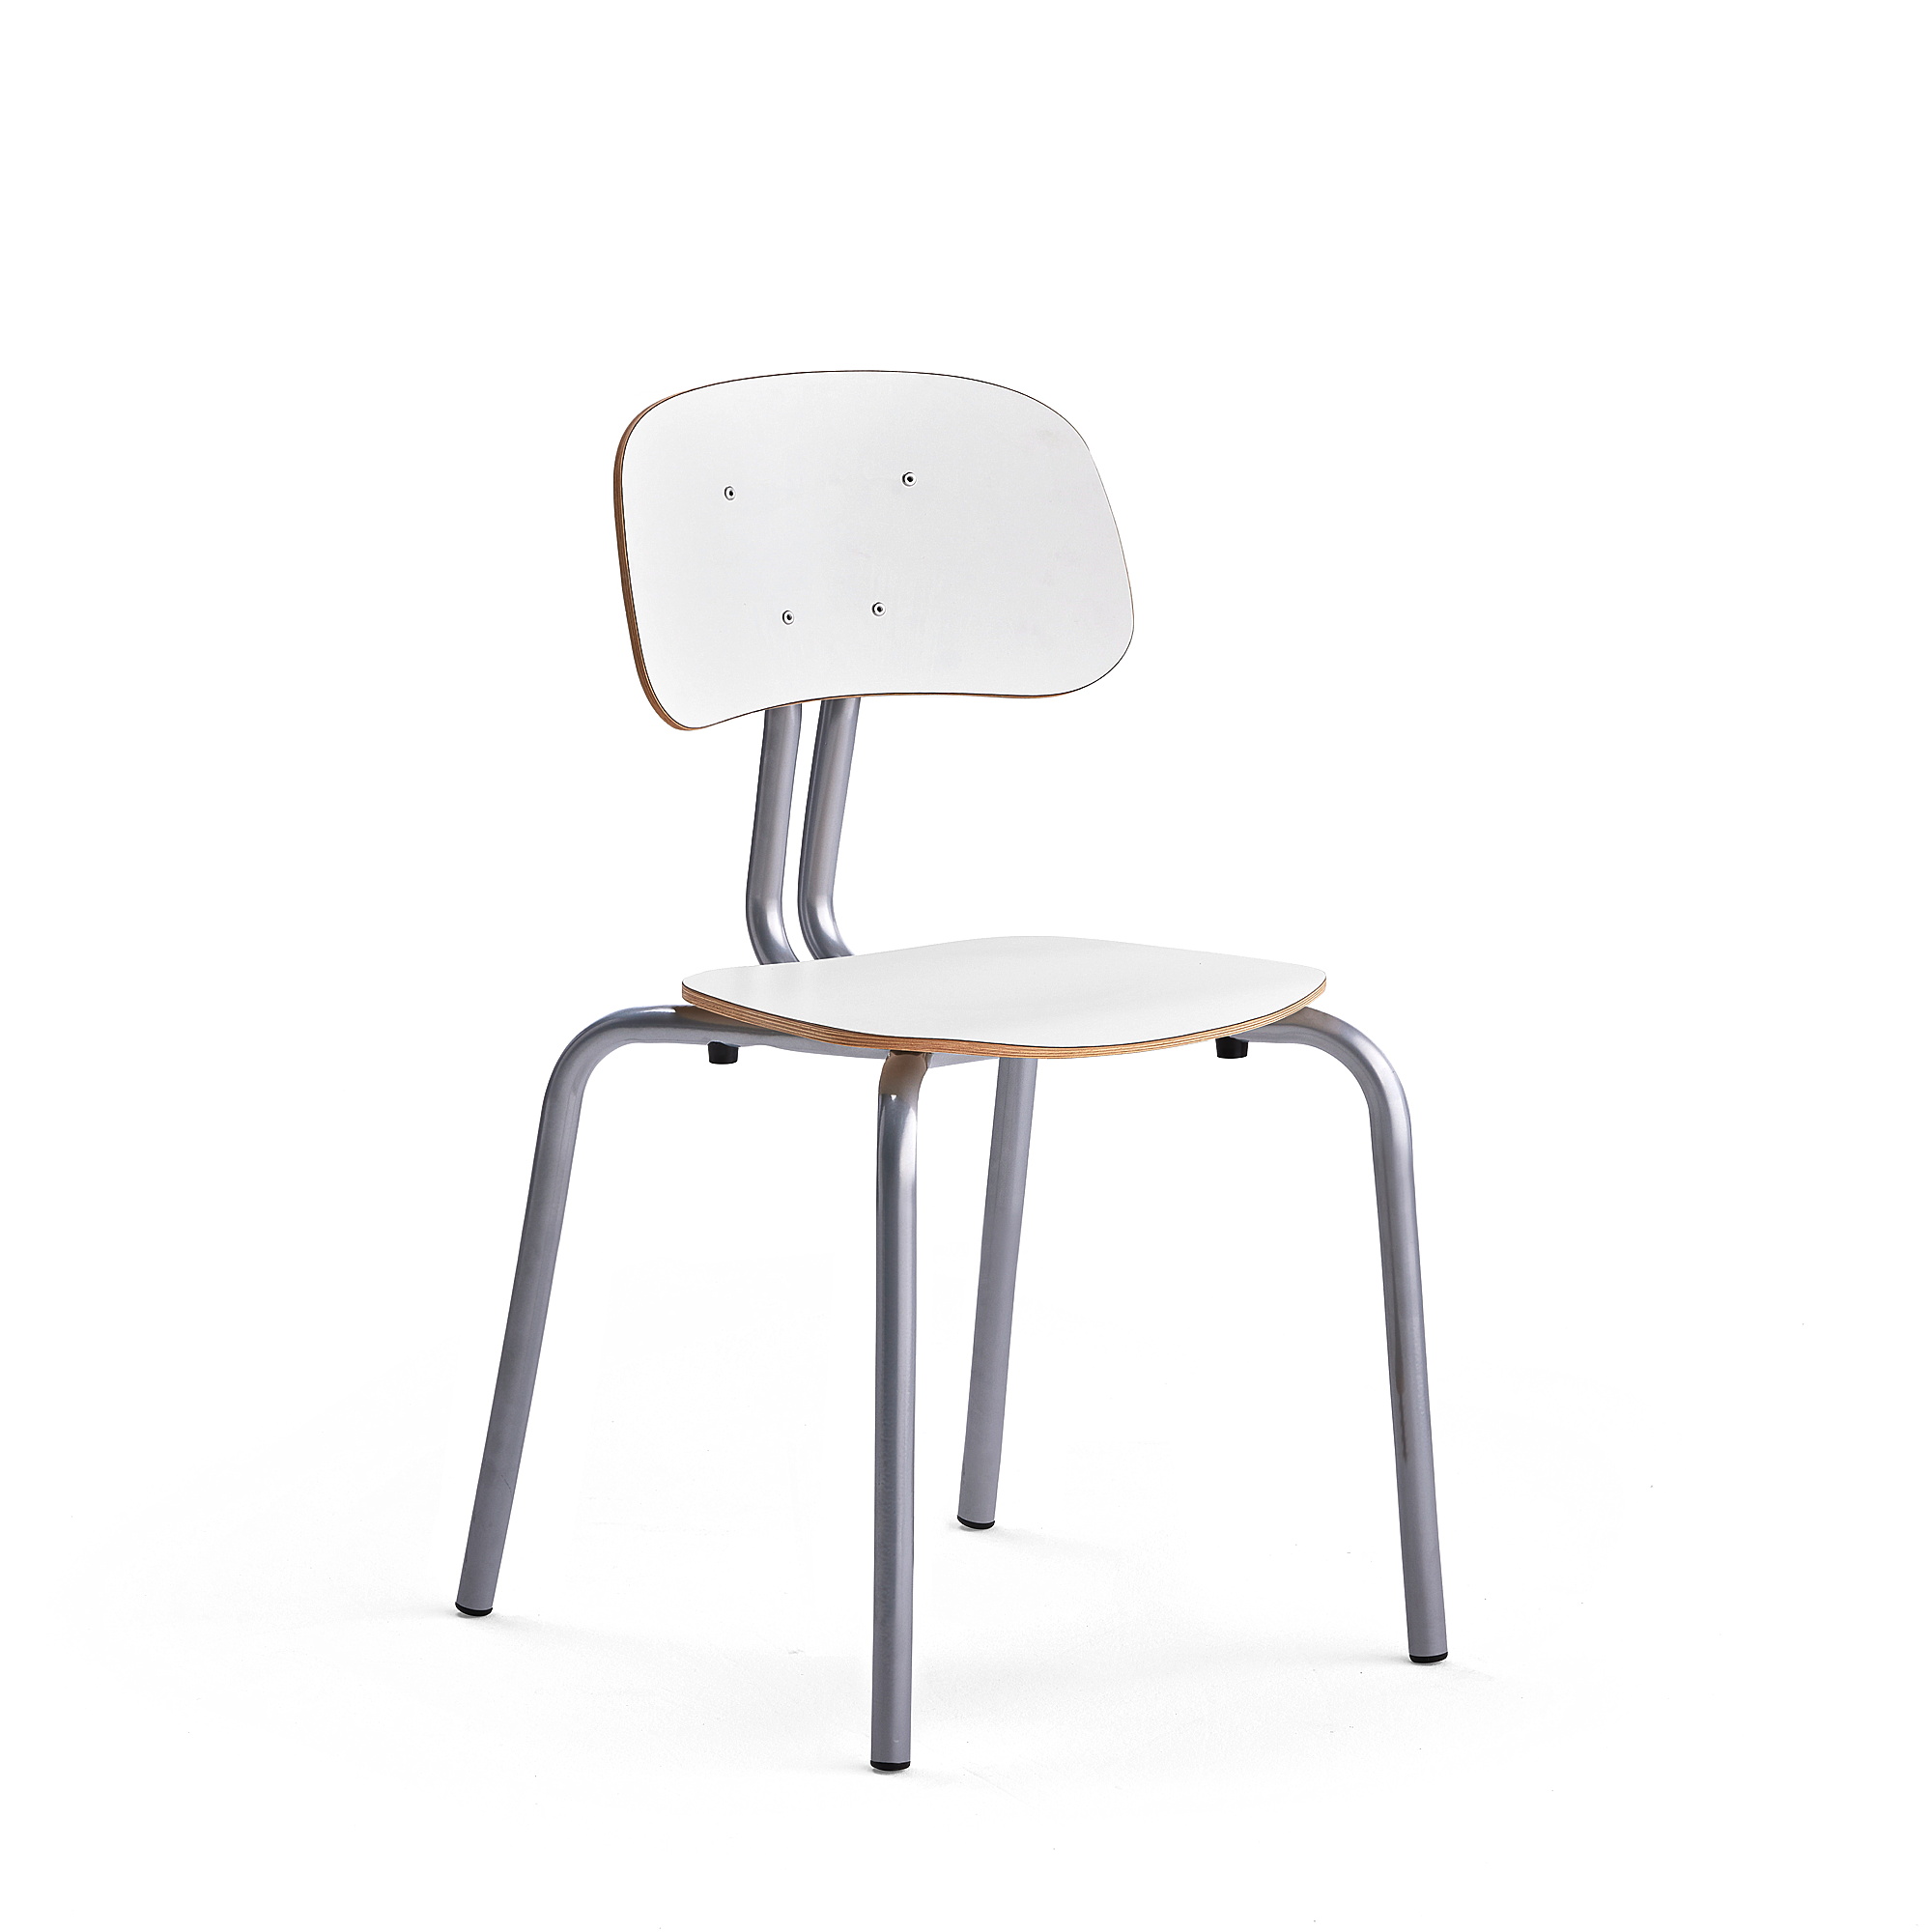 Školní židle YNGVE, 4 nohy, výška 460 mm, stříbrná/bílá